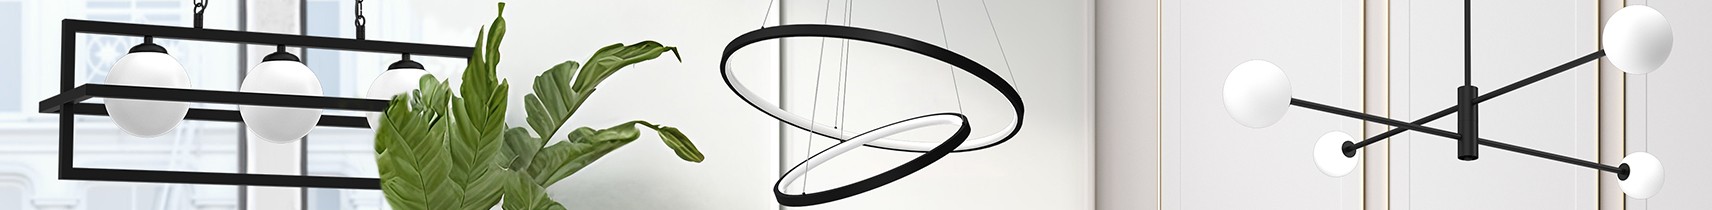 Lampy sufitowe w nowoczesnym salonie